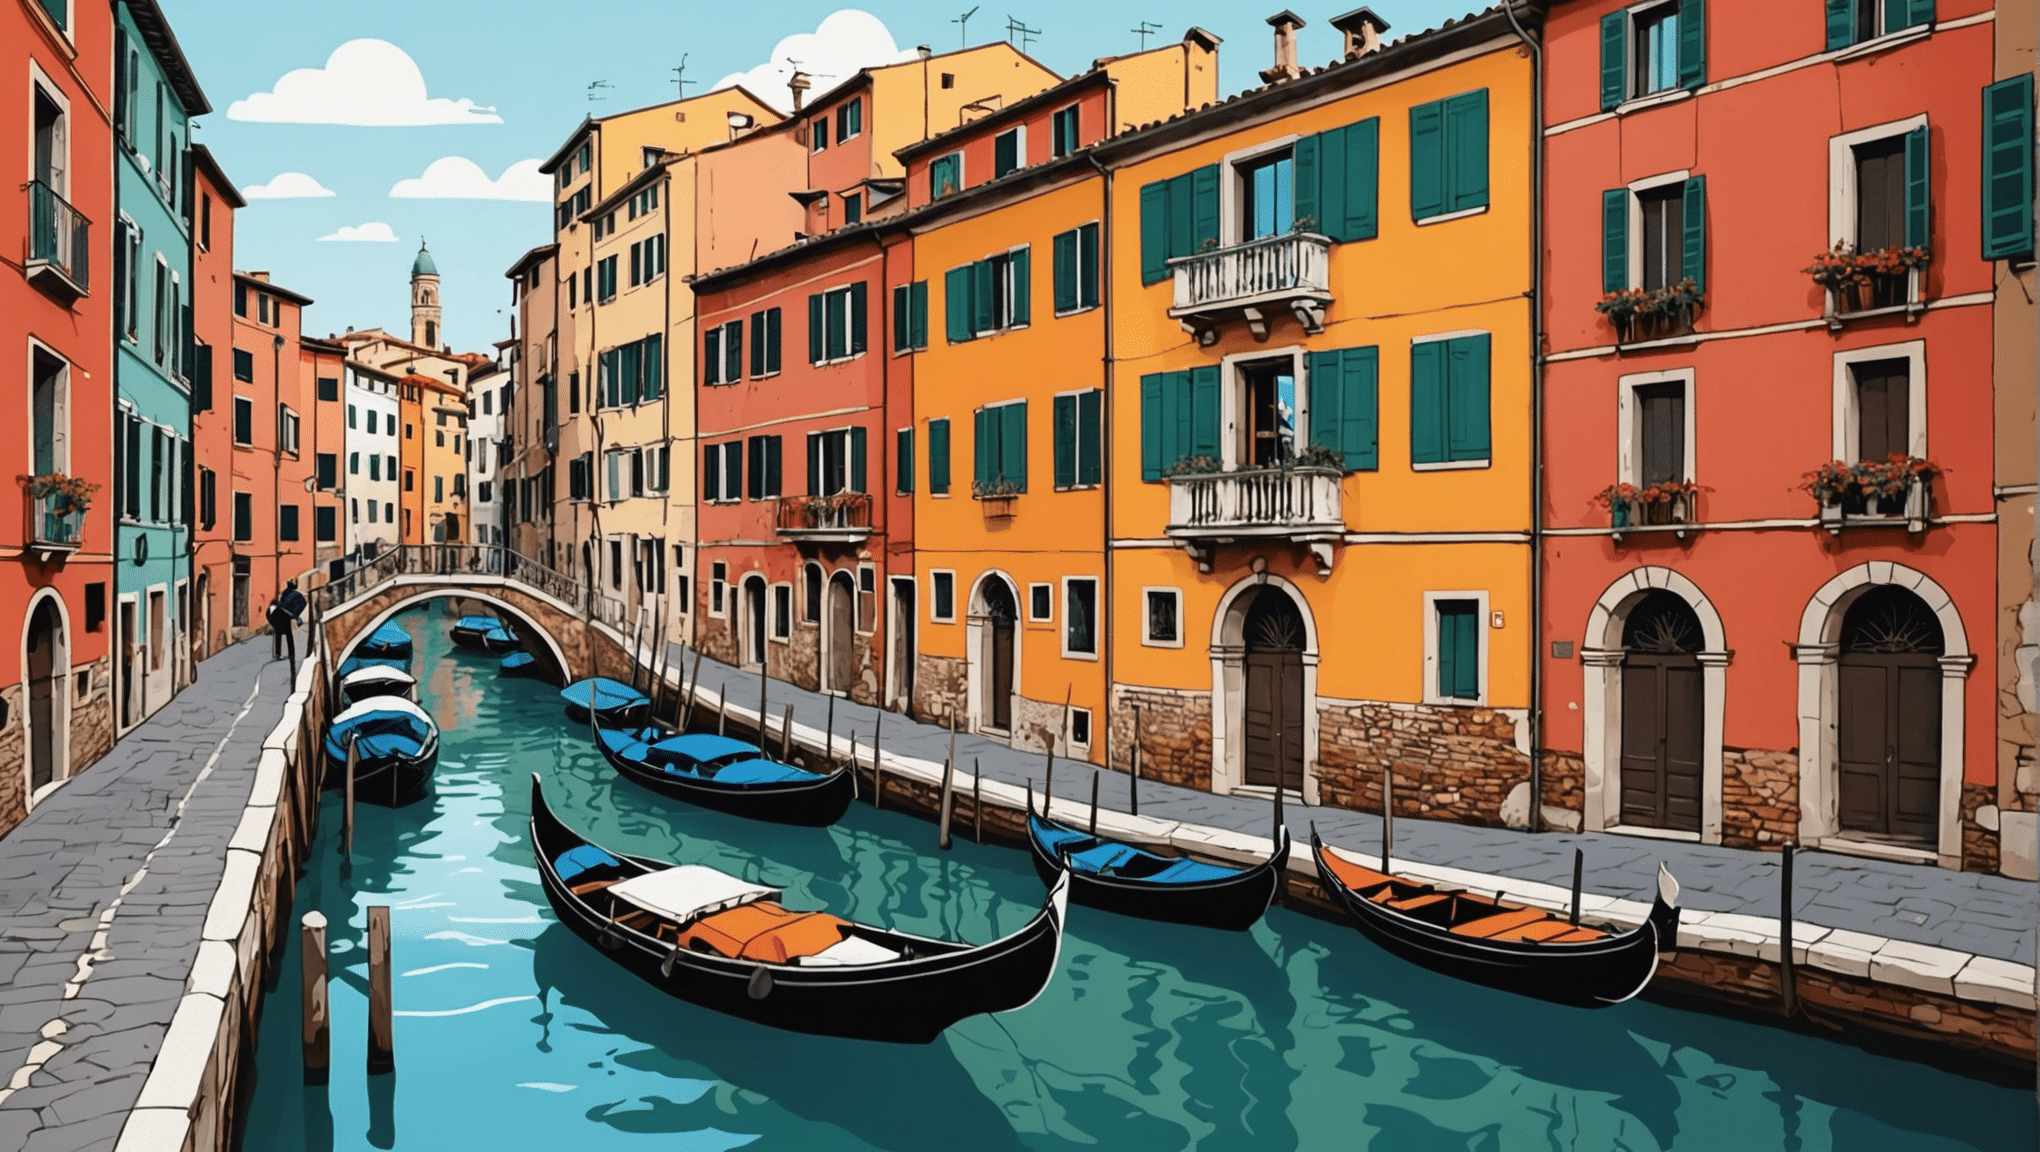 इटली की यात्रा के लिए अवश्य देखने योग्य चीज़ों की खोज करें: कलात्मक खजानों से लेकर पाक आनंद तक, जिसमें लुभावने परिदृश्य भी शामिल हैं। अभी अपना प्रवास बुक करें!